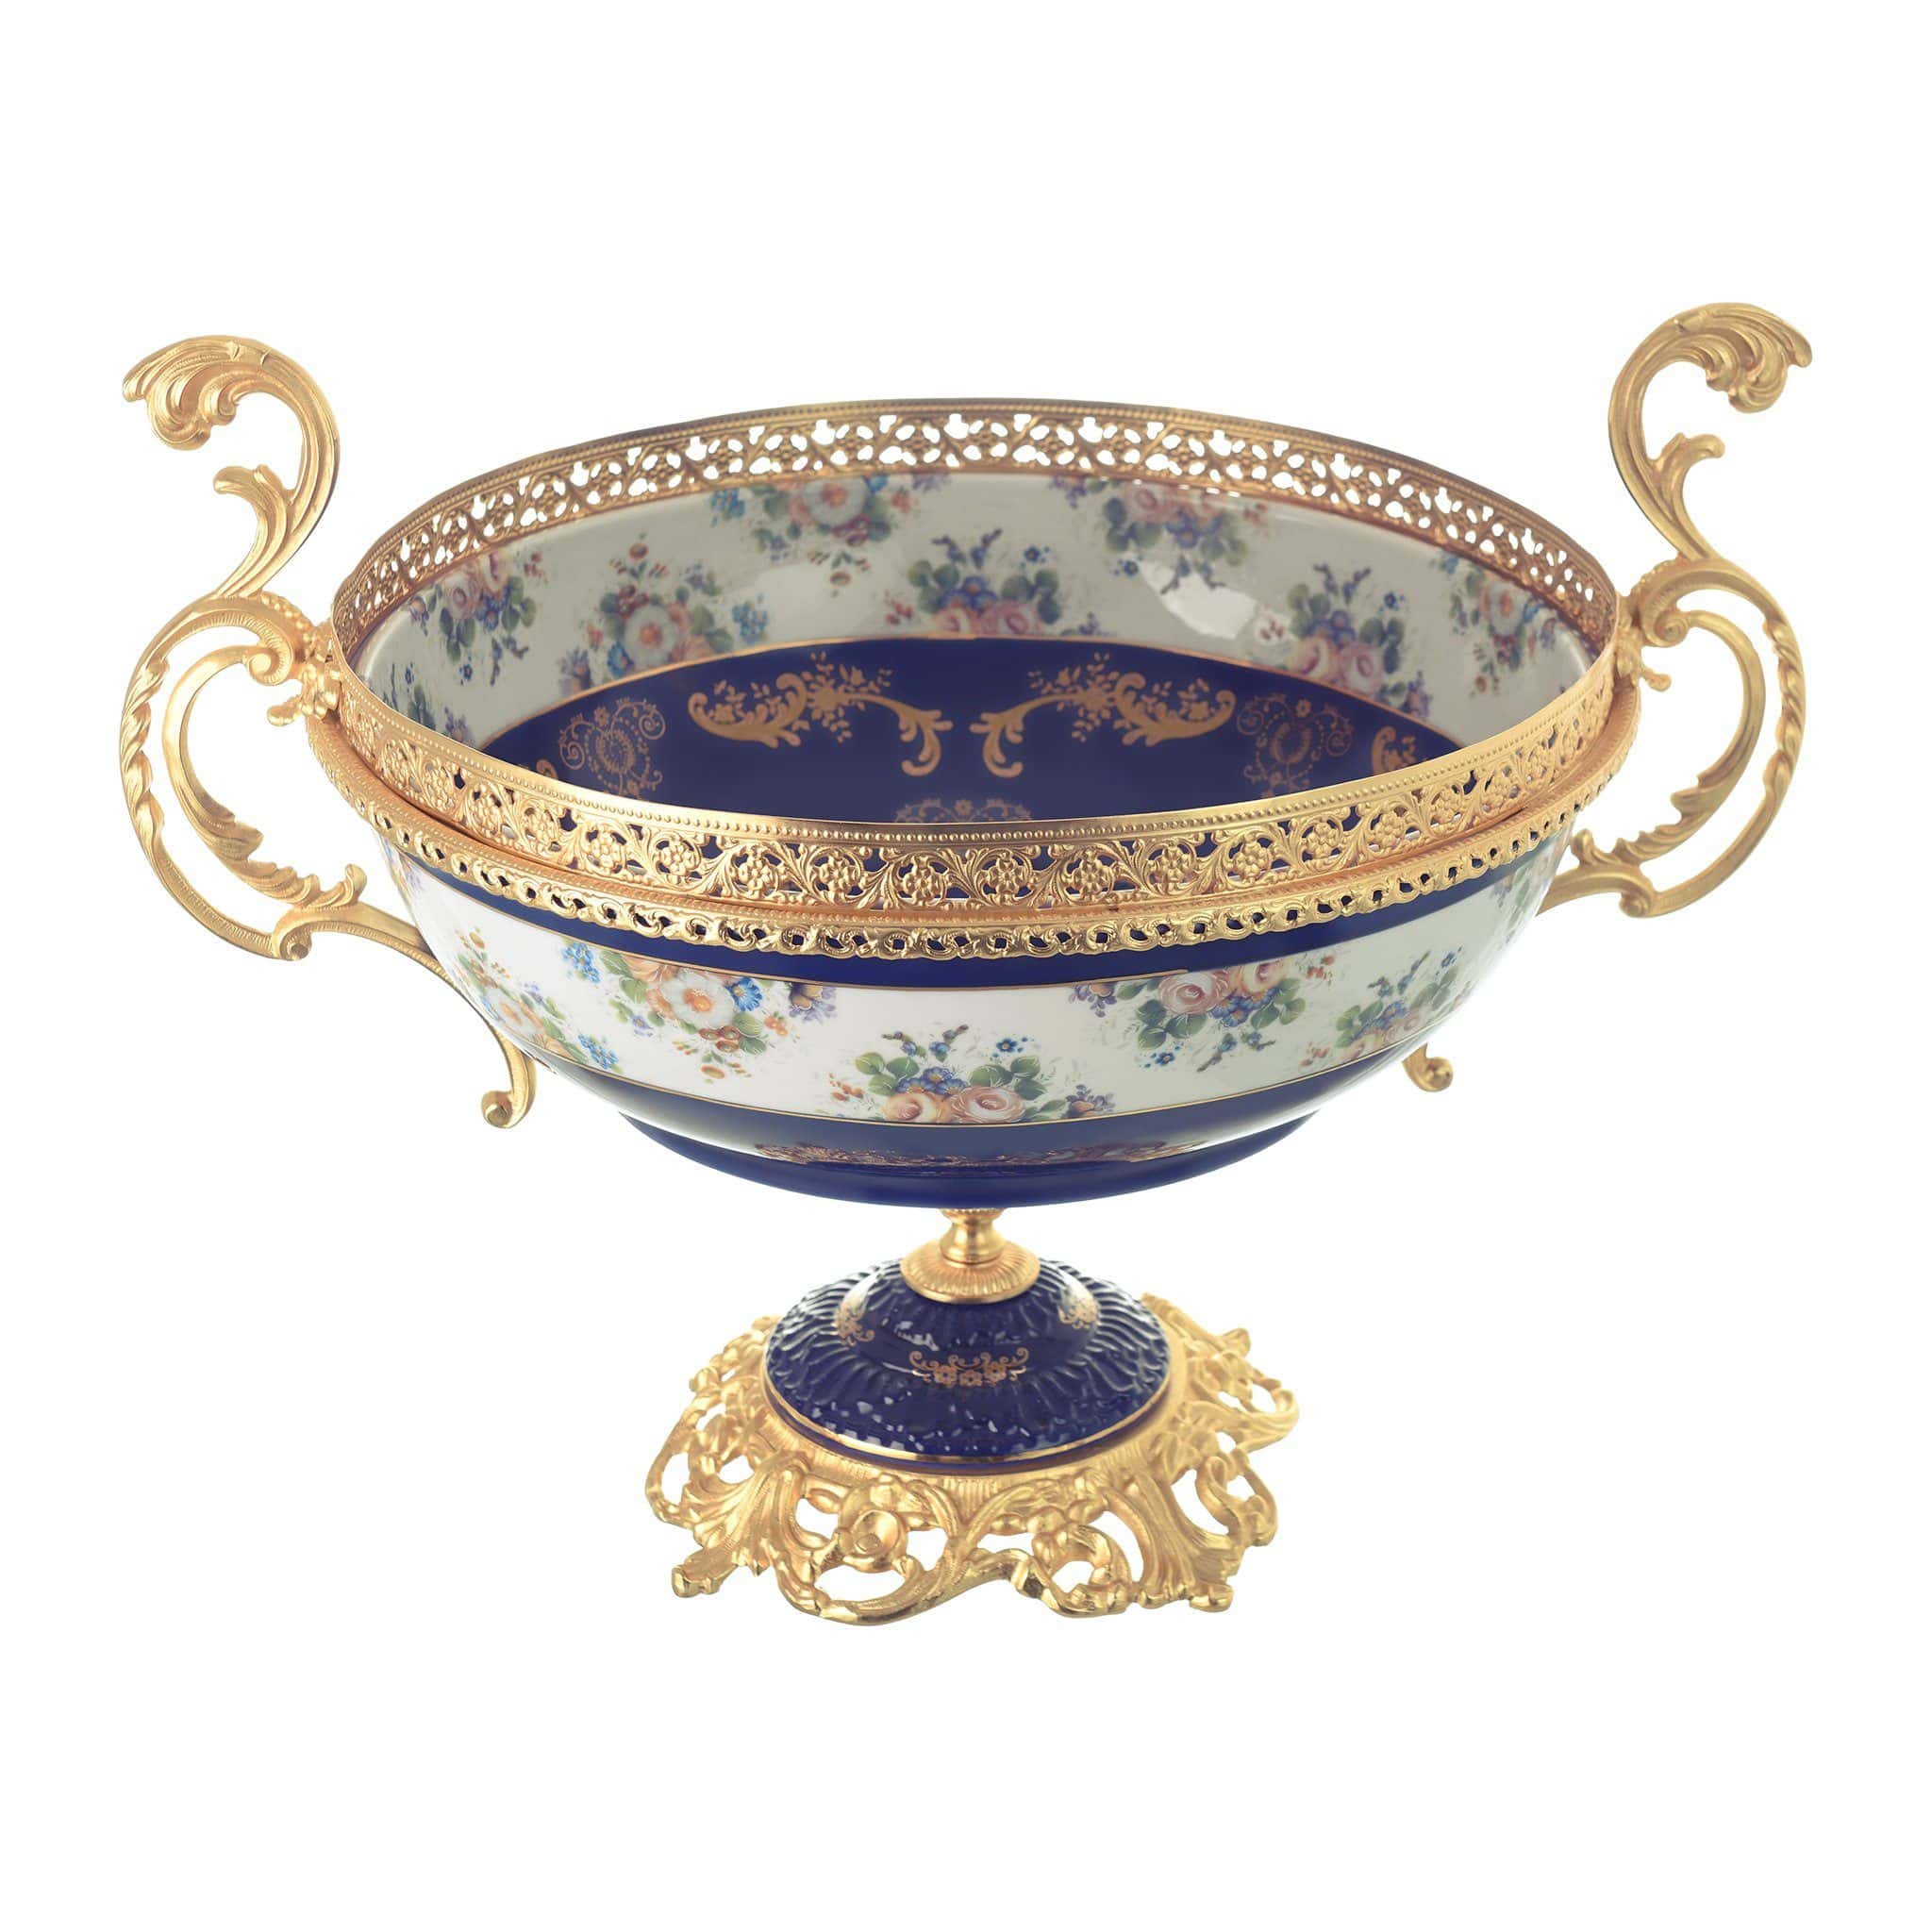 Caroline - Oval Bowl with Base - Floral Design - Blue & Gold - 45x36x38cm - 58000518